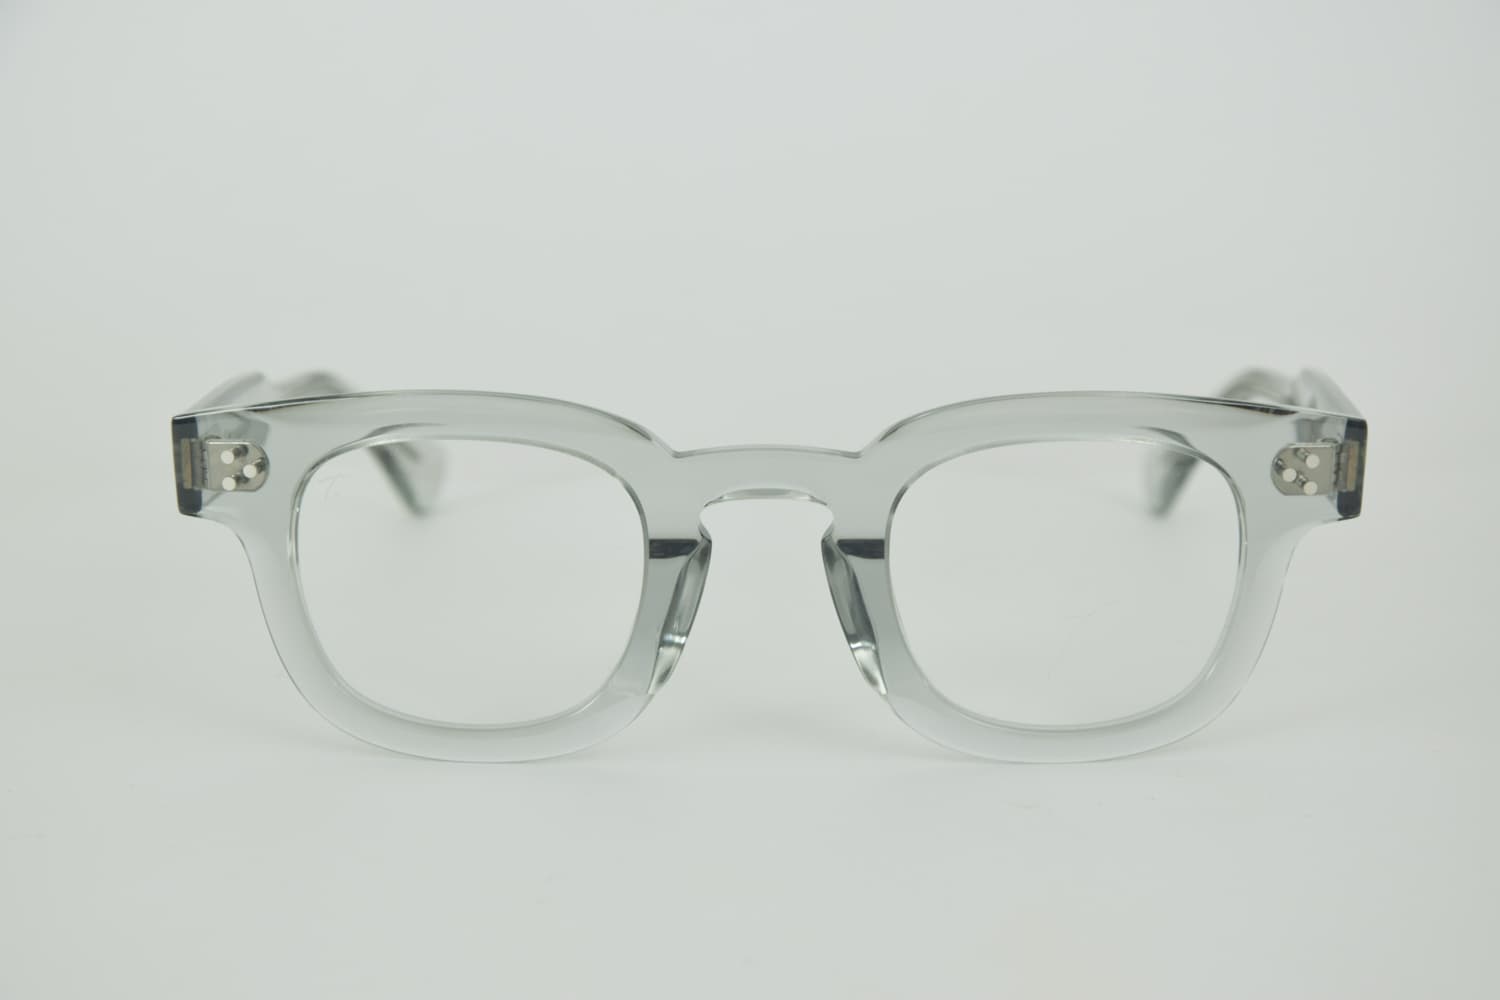 Foto frontale Occhiali da Vista Uomo trasparenti - Occhiali Talla Spazio Grigio Trasparente